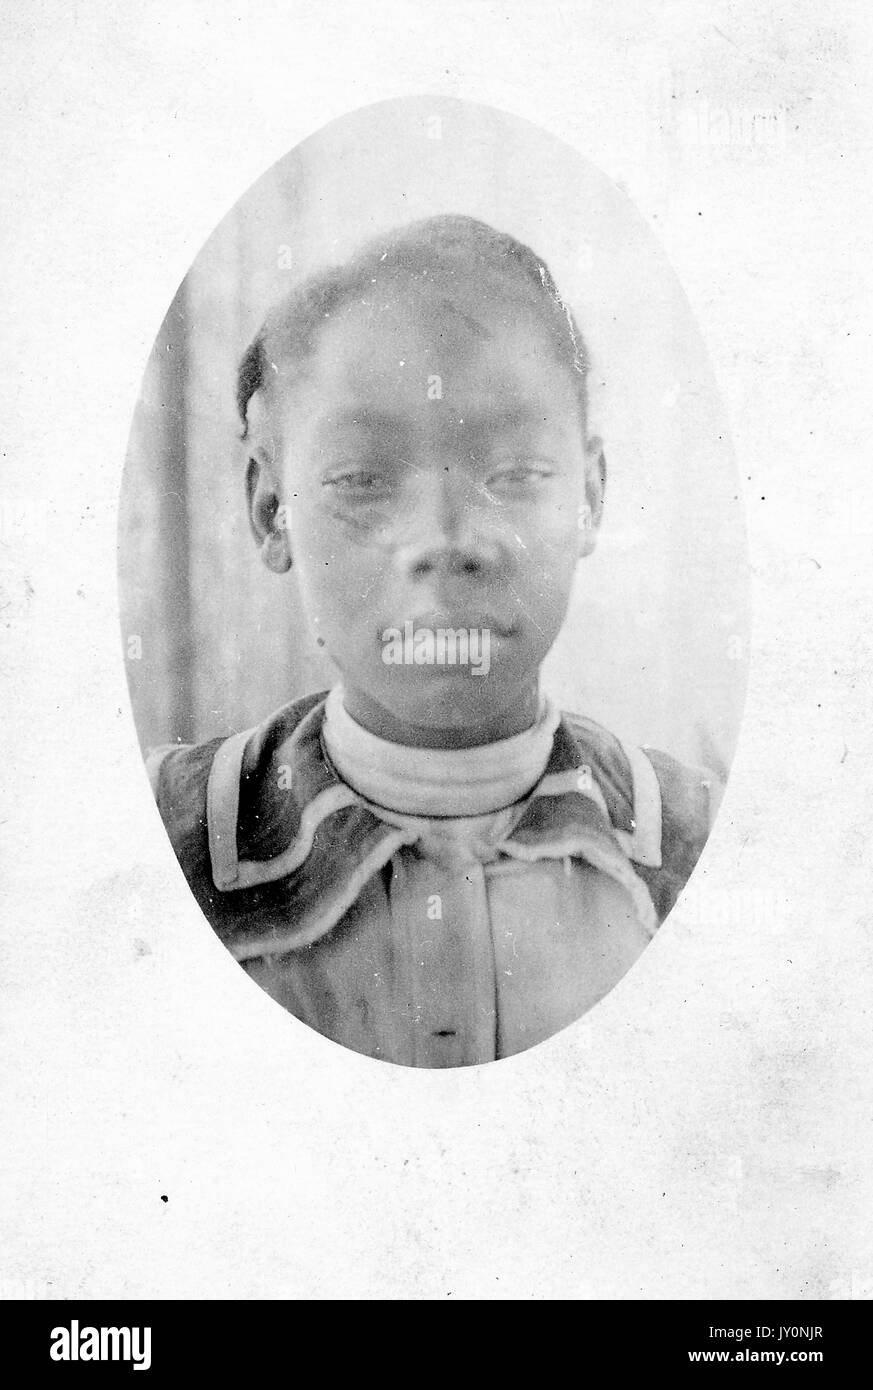 Testa ovale di una giovane donna afroamericana, con indosso un dolcevita bianco sotto un cappotto collato, con una grave espressione facciale, 1920. Foto Stock